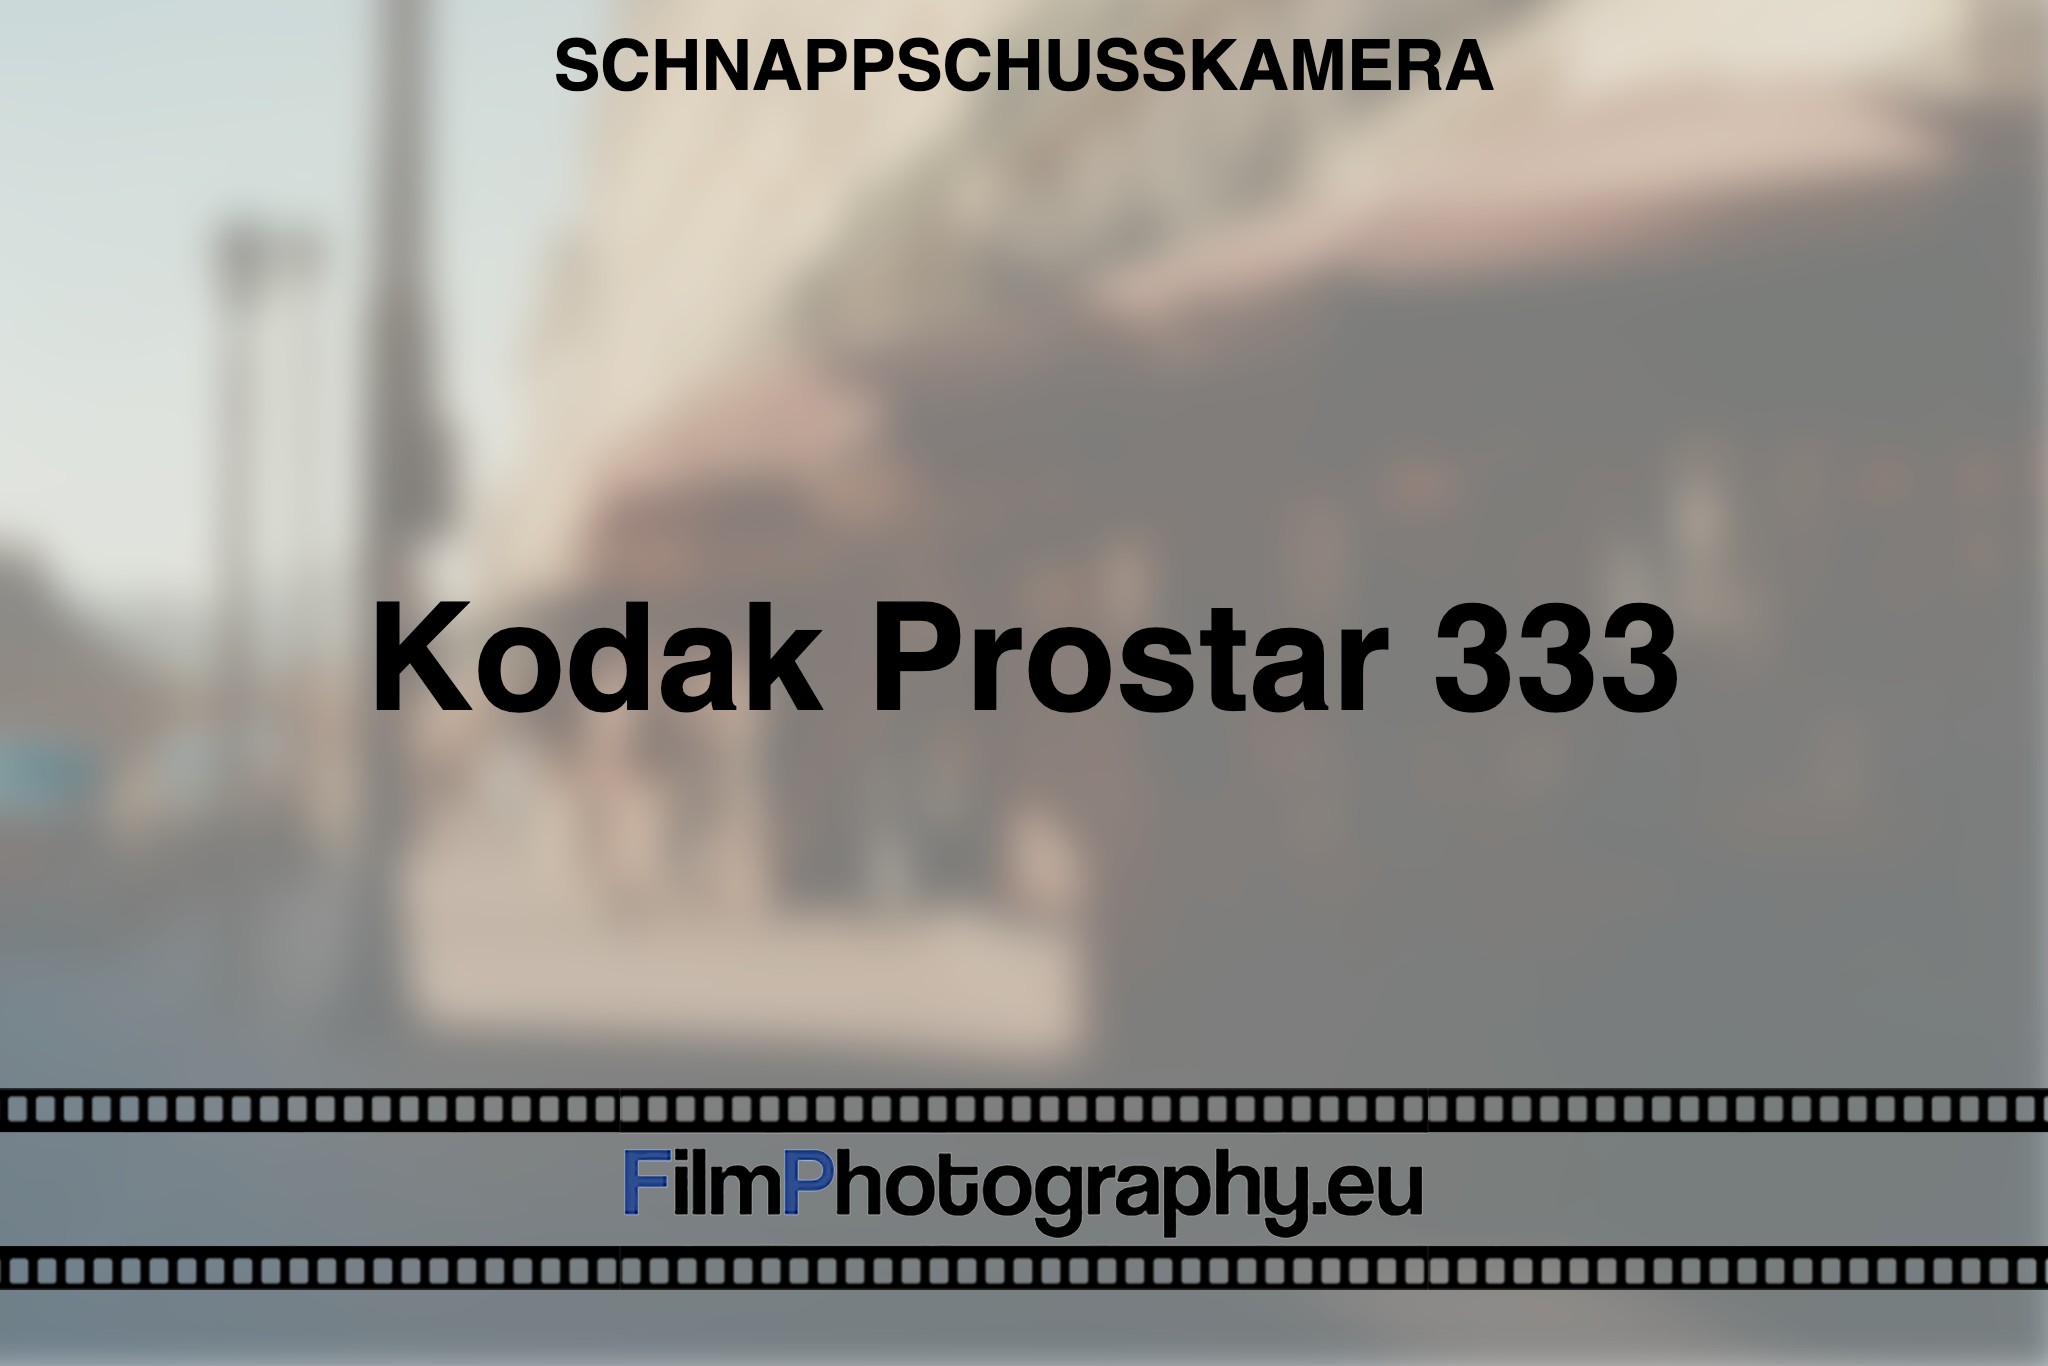 kodak-prostar-333-schnappschusskamera-bnv